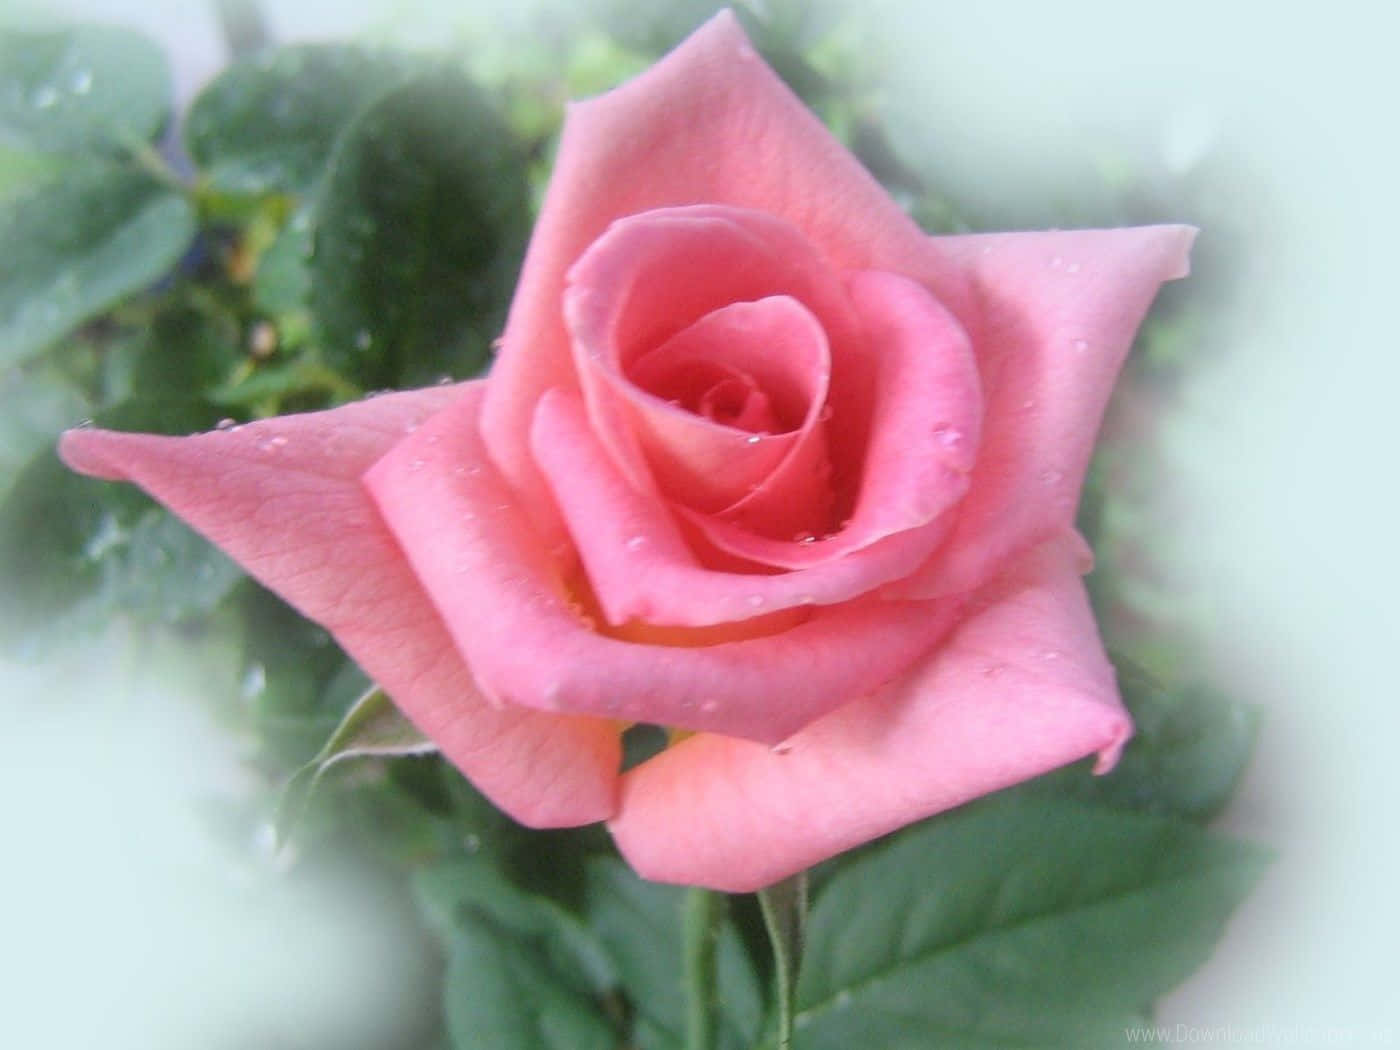 Unbouquet Di Bellissime Rose Rosa Su Uno Sfondo Bianco Morbido.